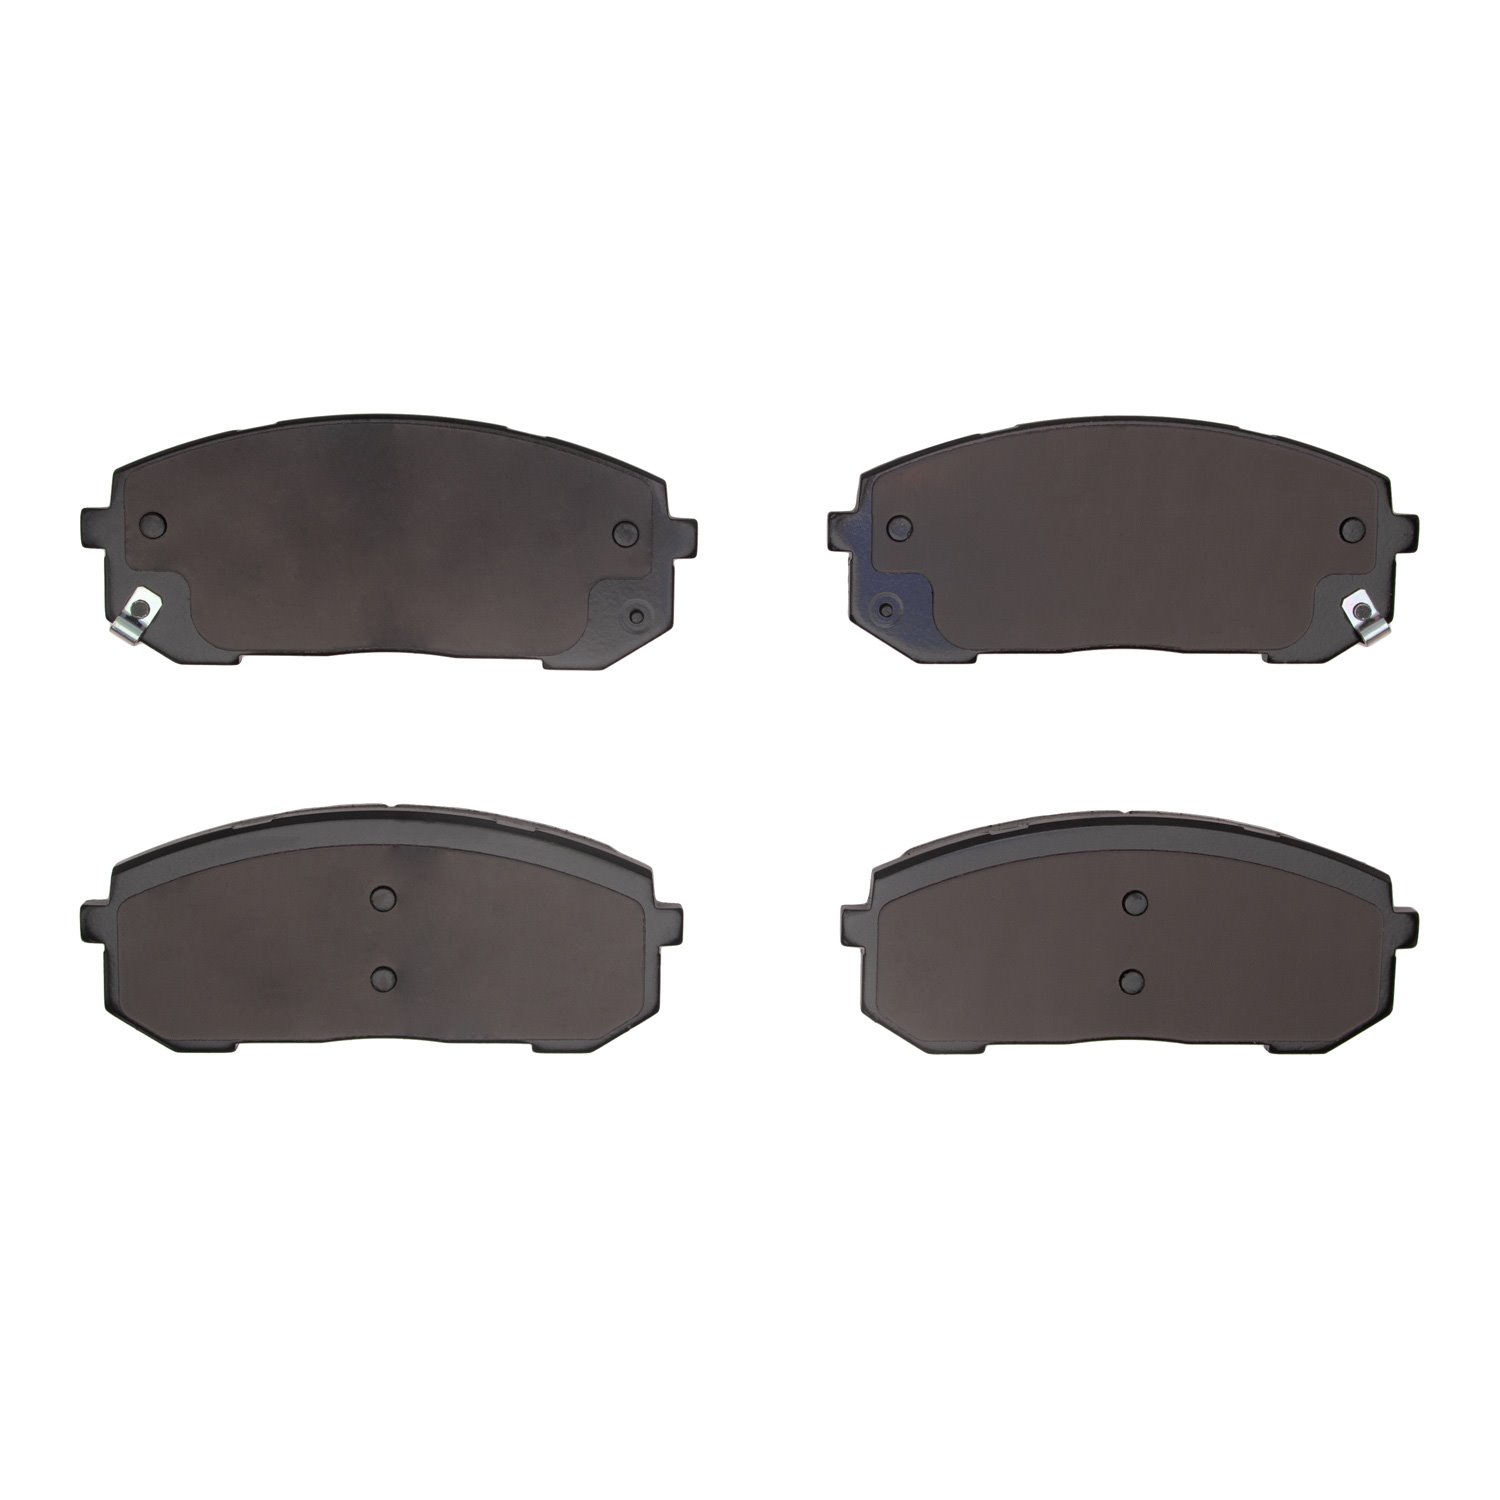 1310-2302-00 3000-Series Ceramic Brake Pads, Fits Select Kia/Hyundai/Genesis, Position: Front